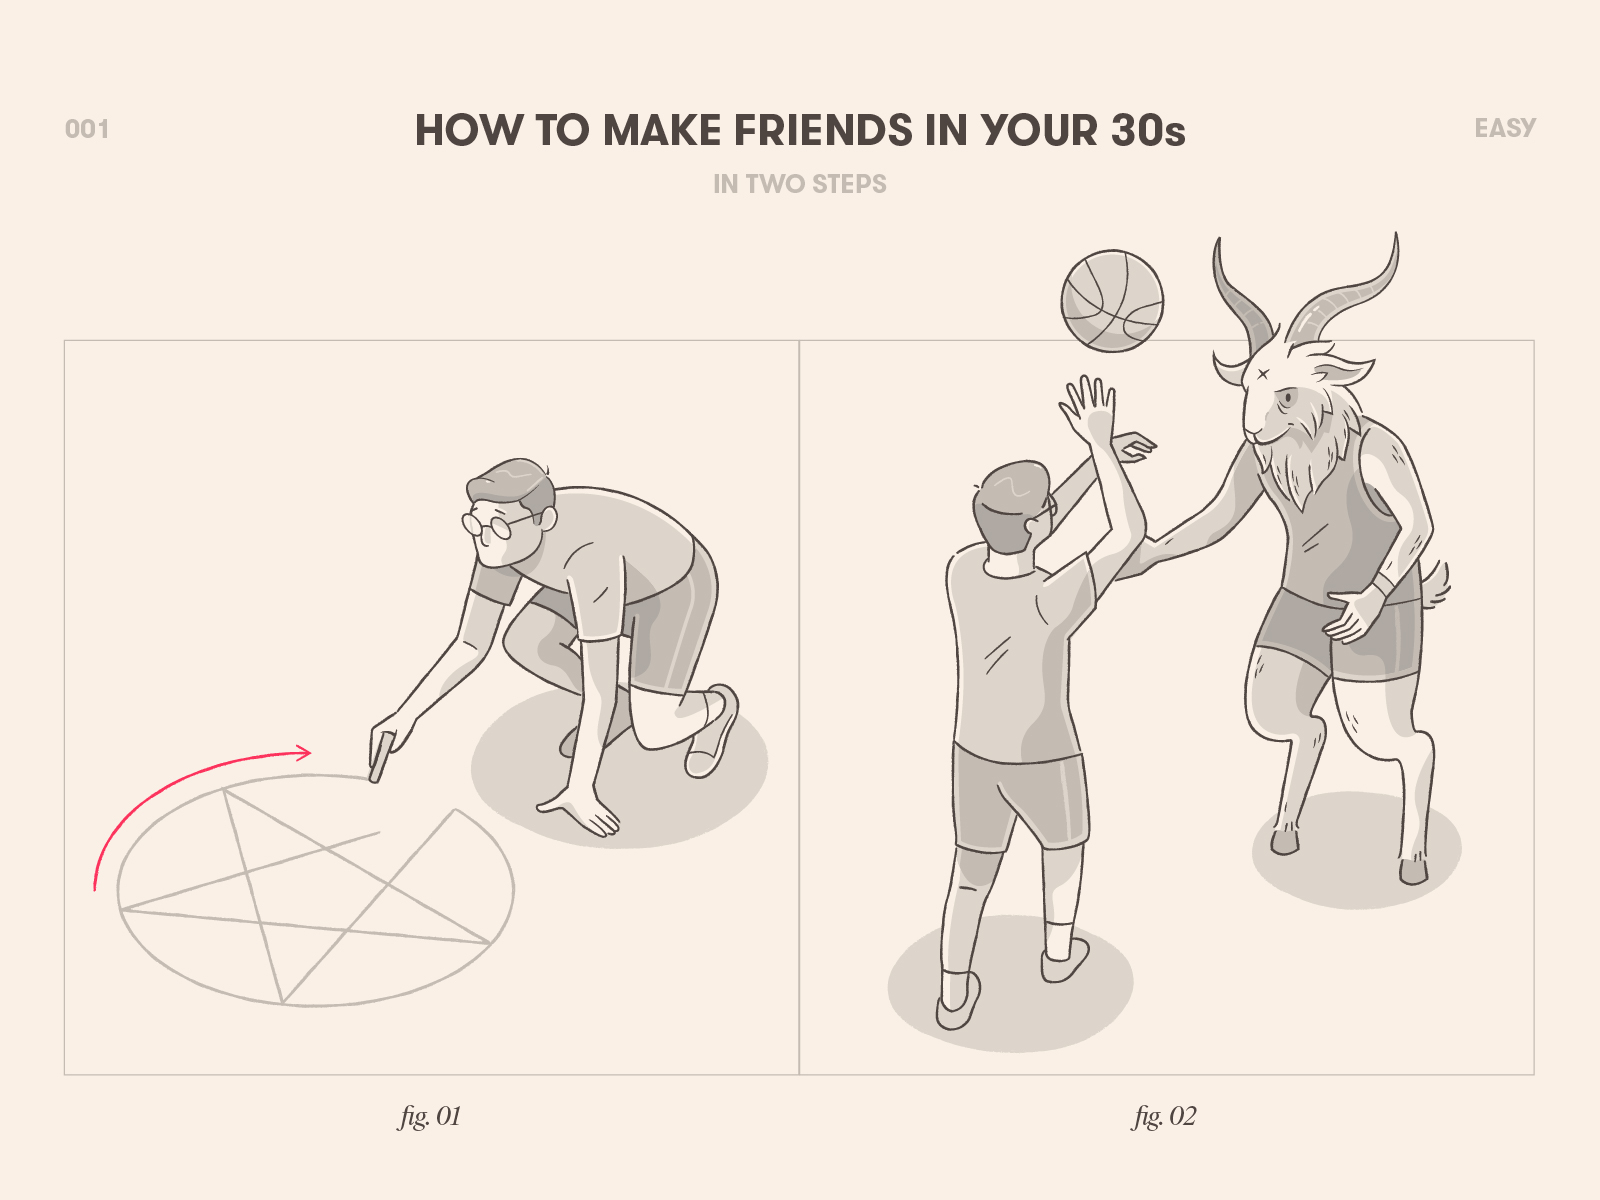 چگونه در 30 سالگی دوست پیدا کنیم